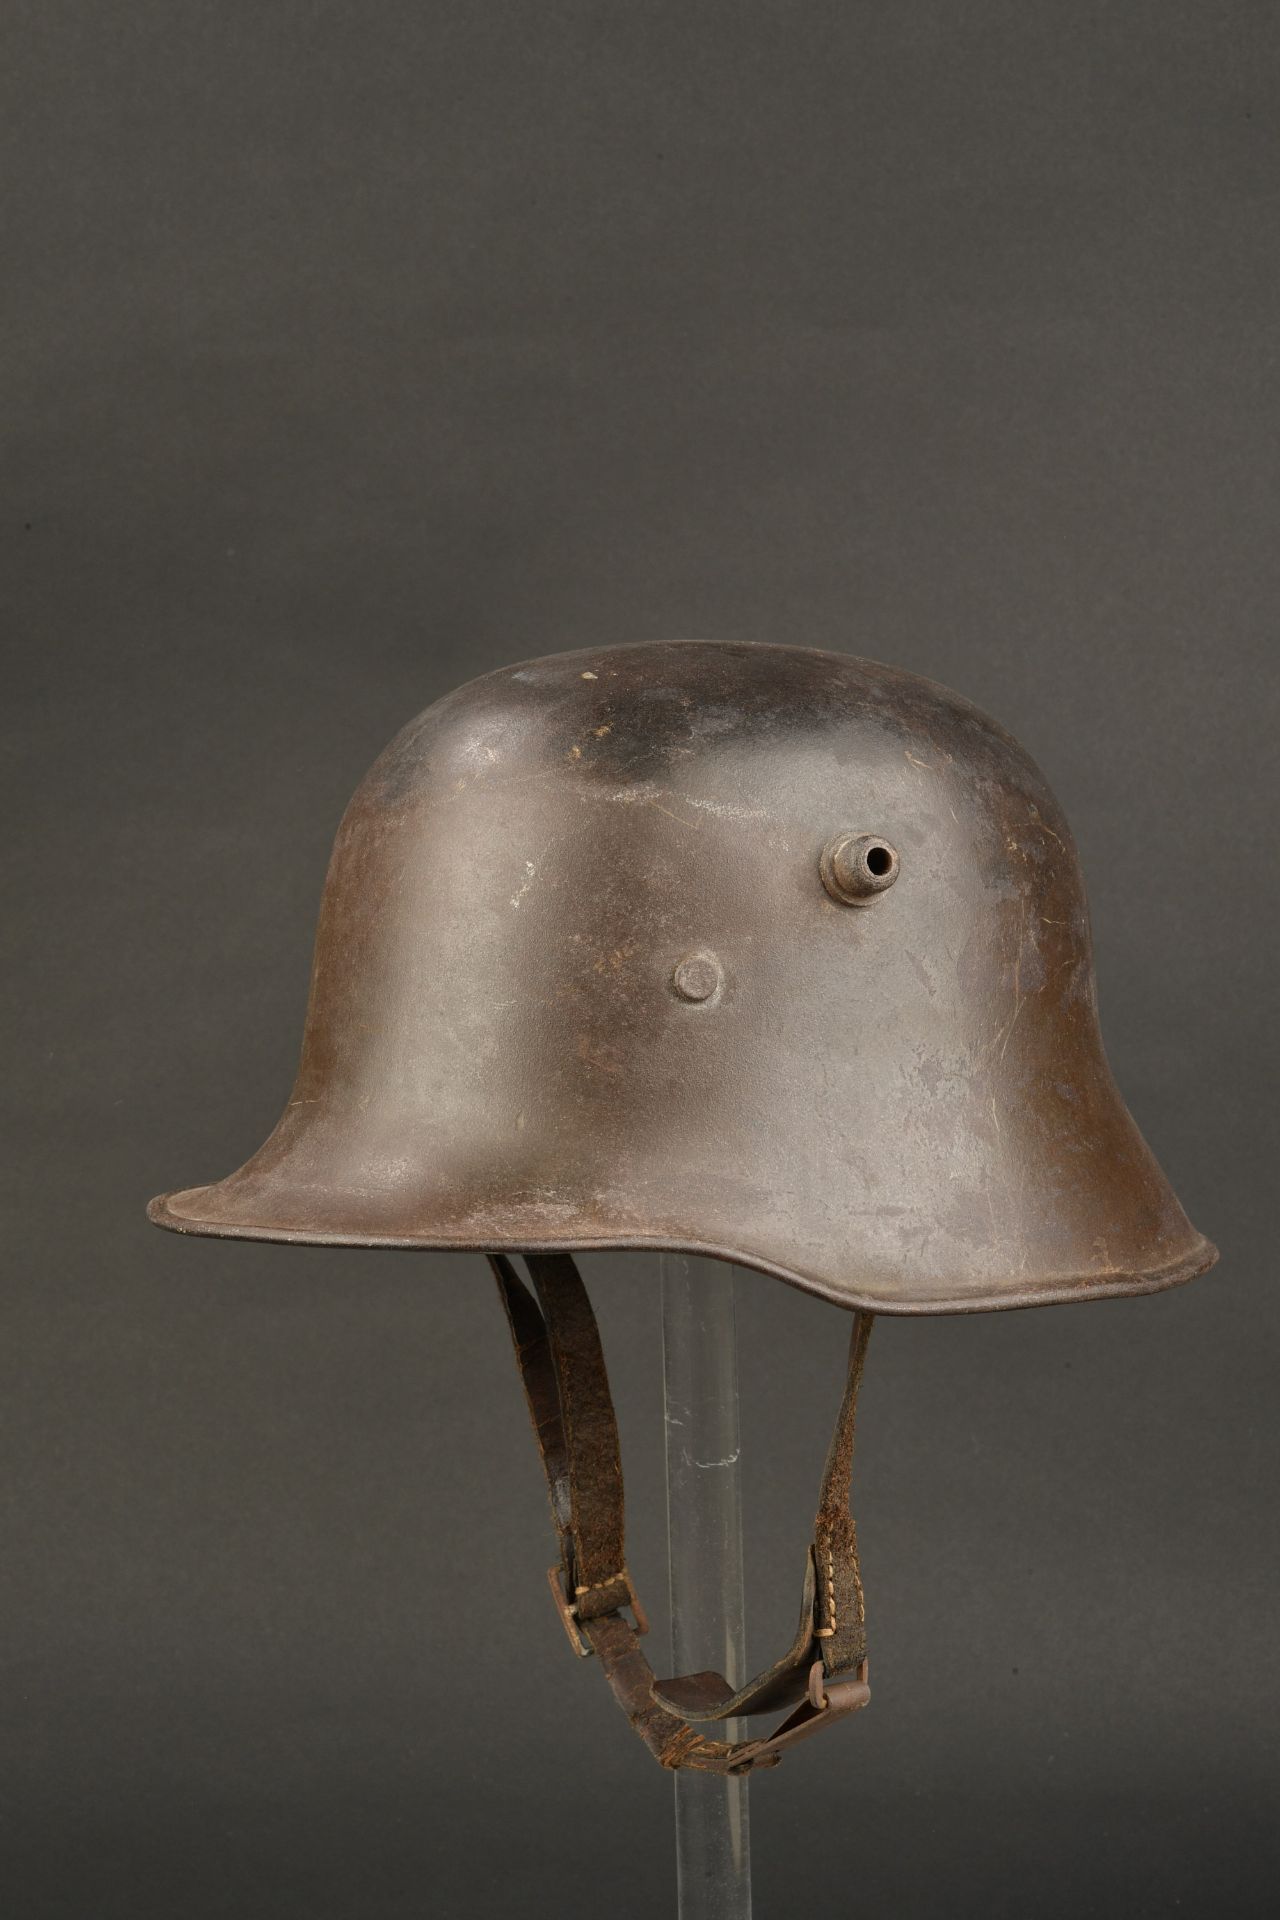 Casque 1918 allemand. German 1918 helmet